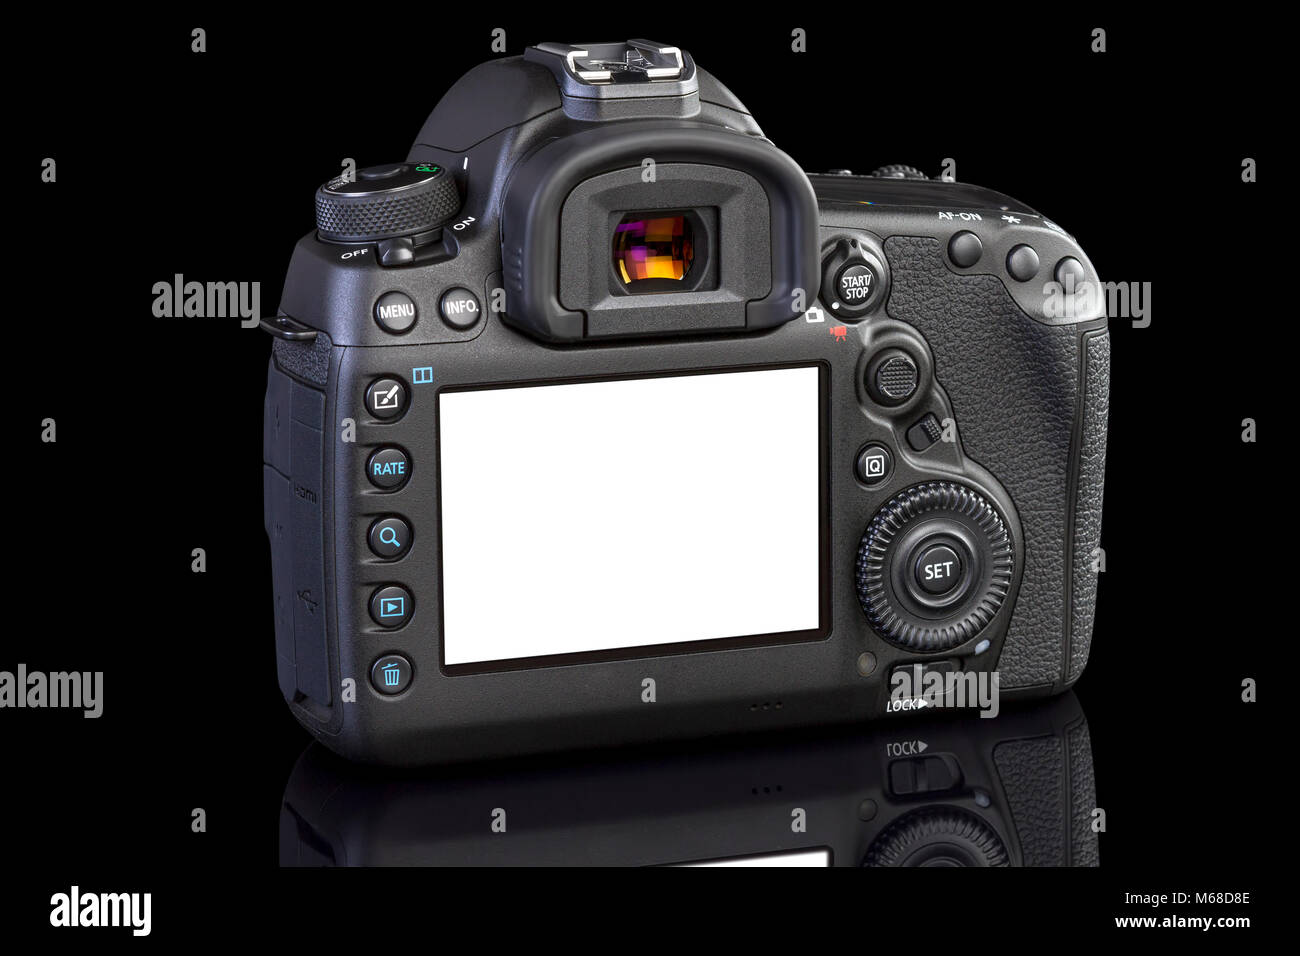 Fotocamera reflex digitale nero su sfondo di vetro Foto Stock